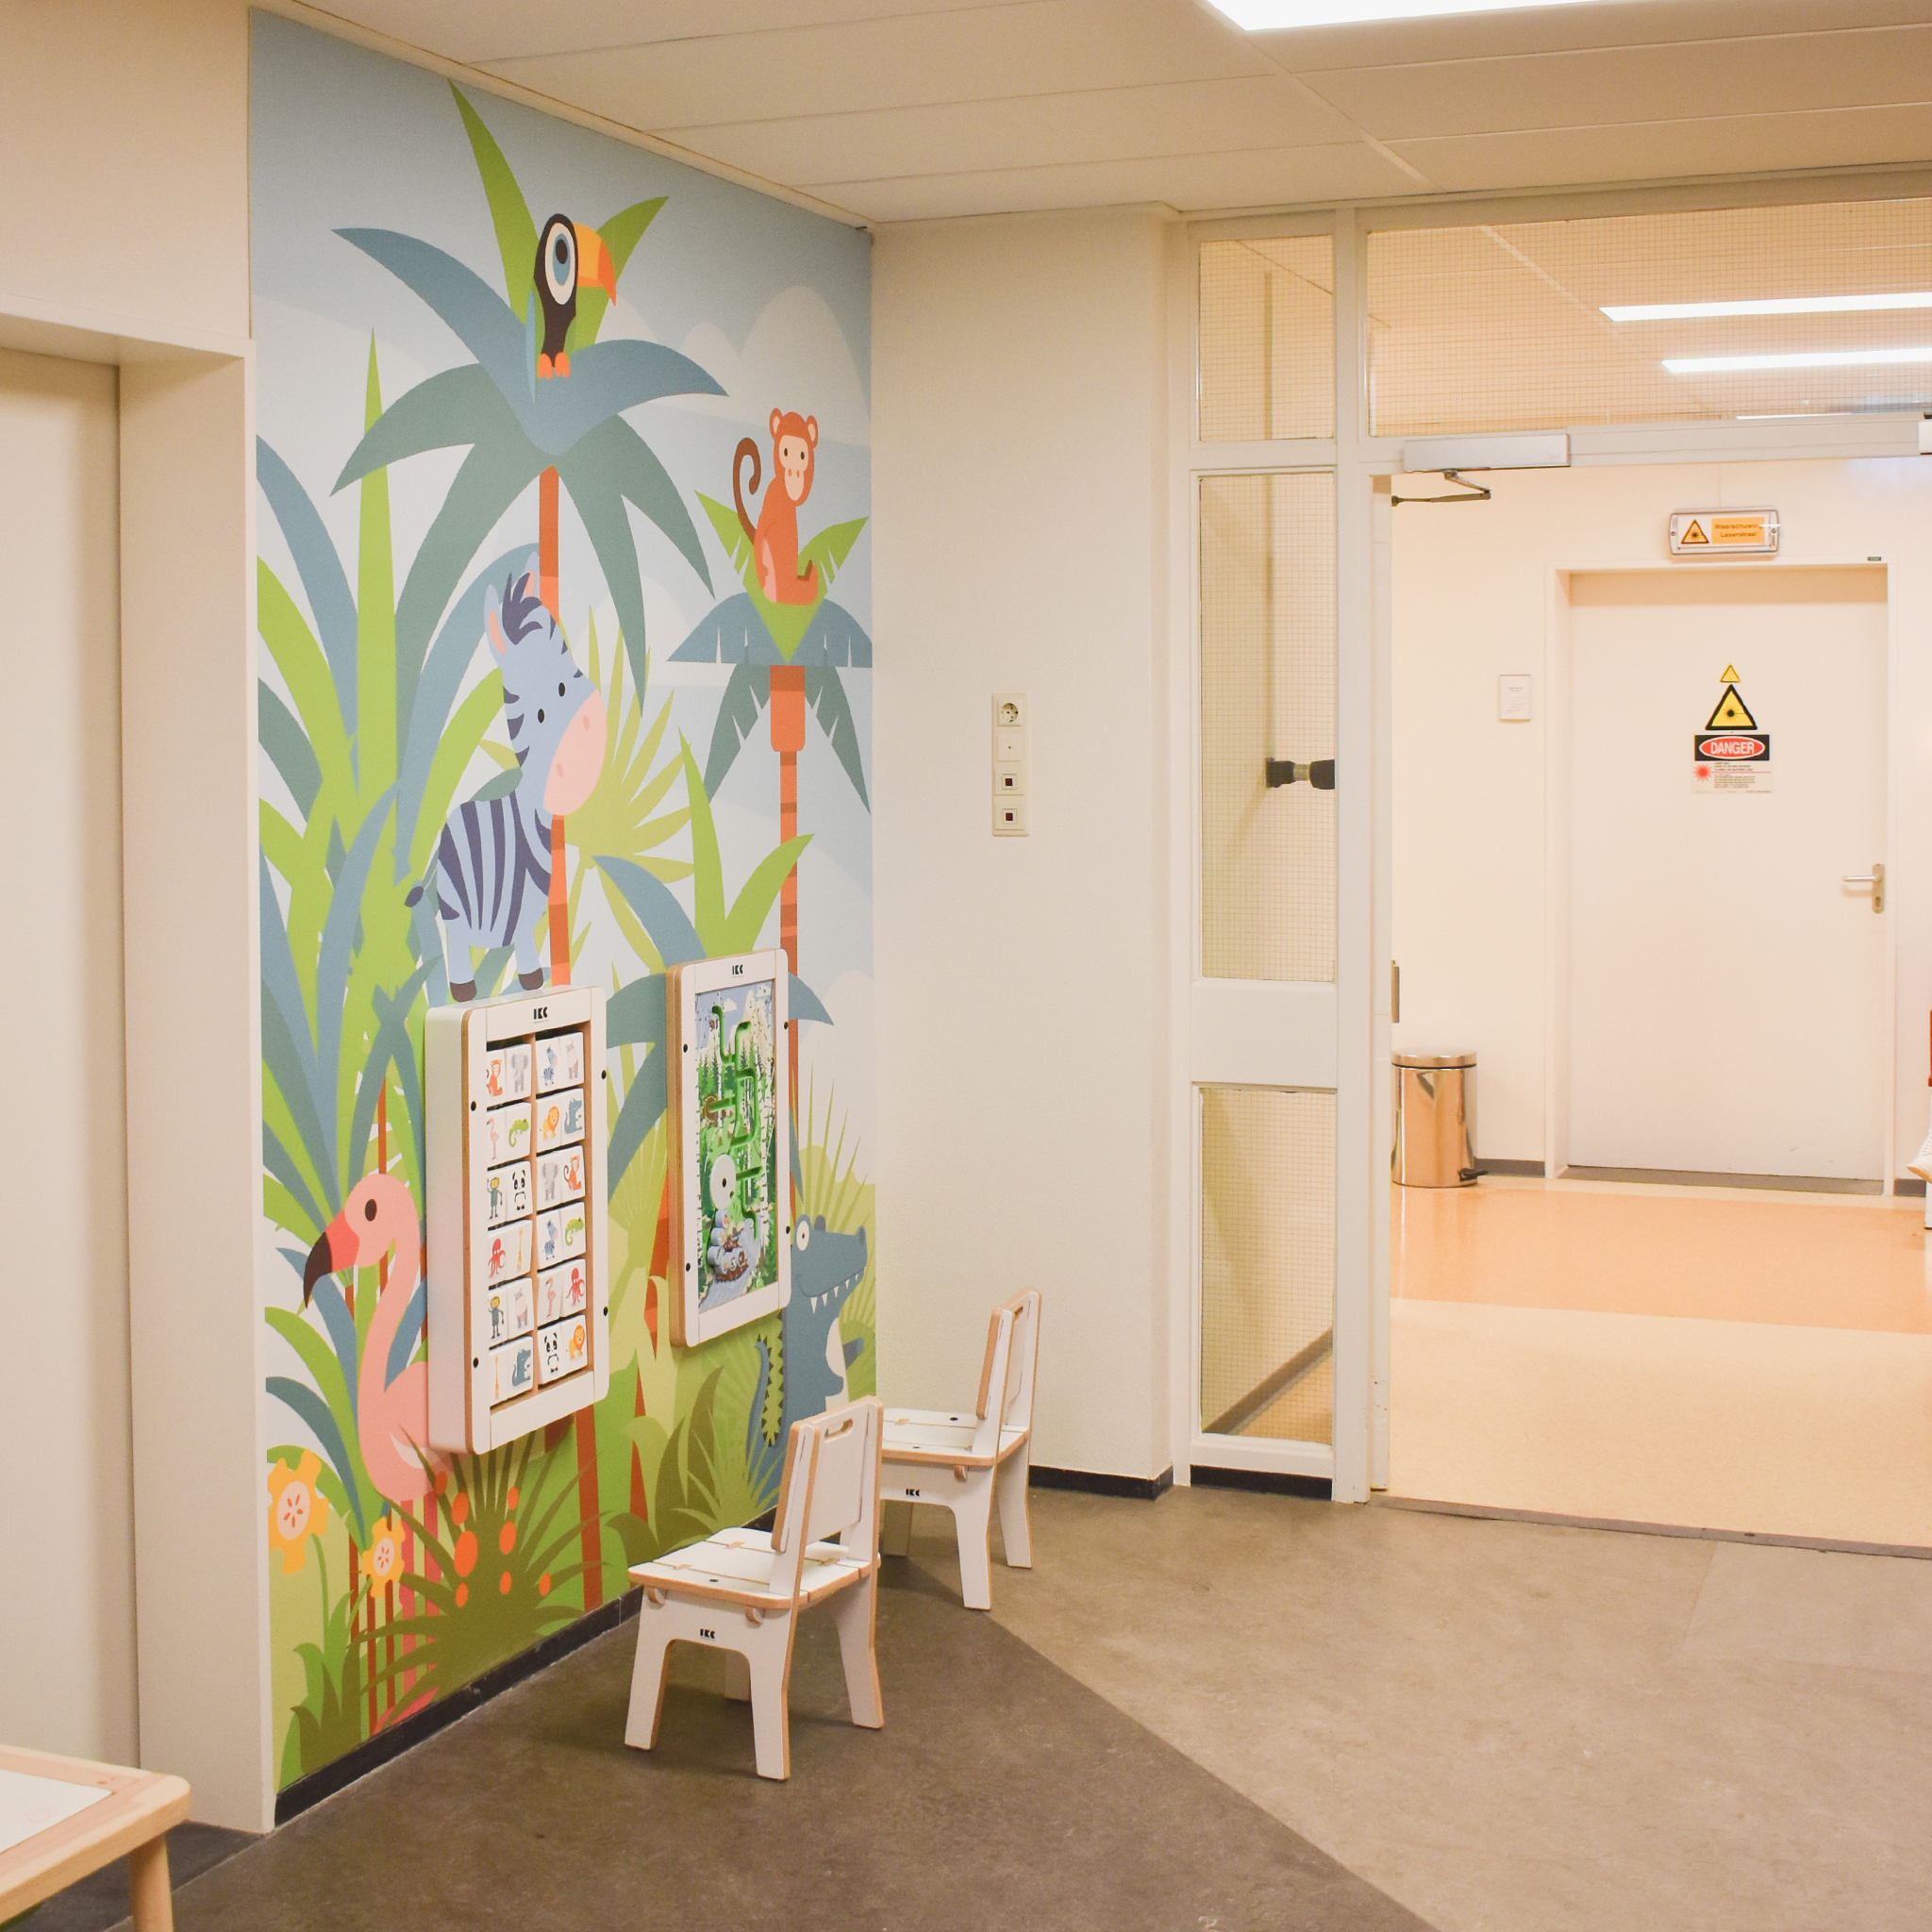 Rincón de juegos IKC con temática de selva safari en el hospital de Zuyderland